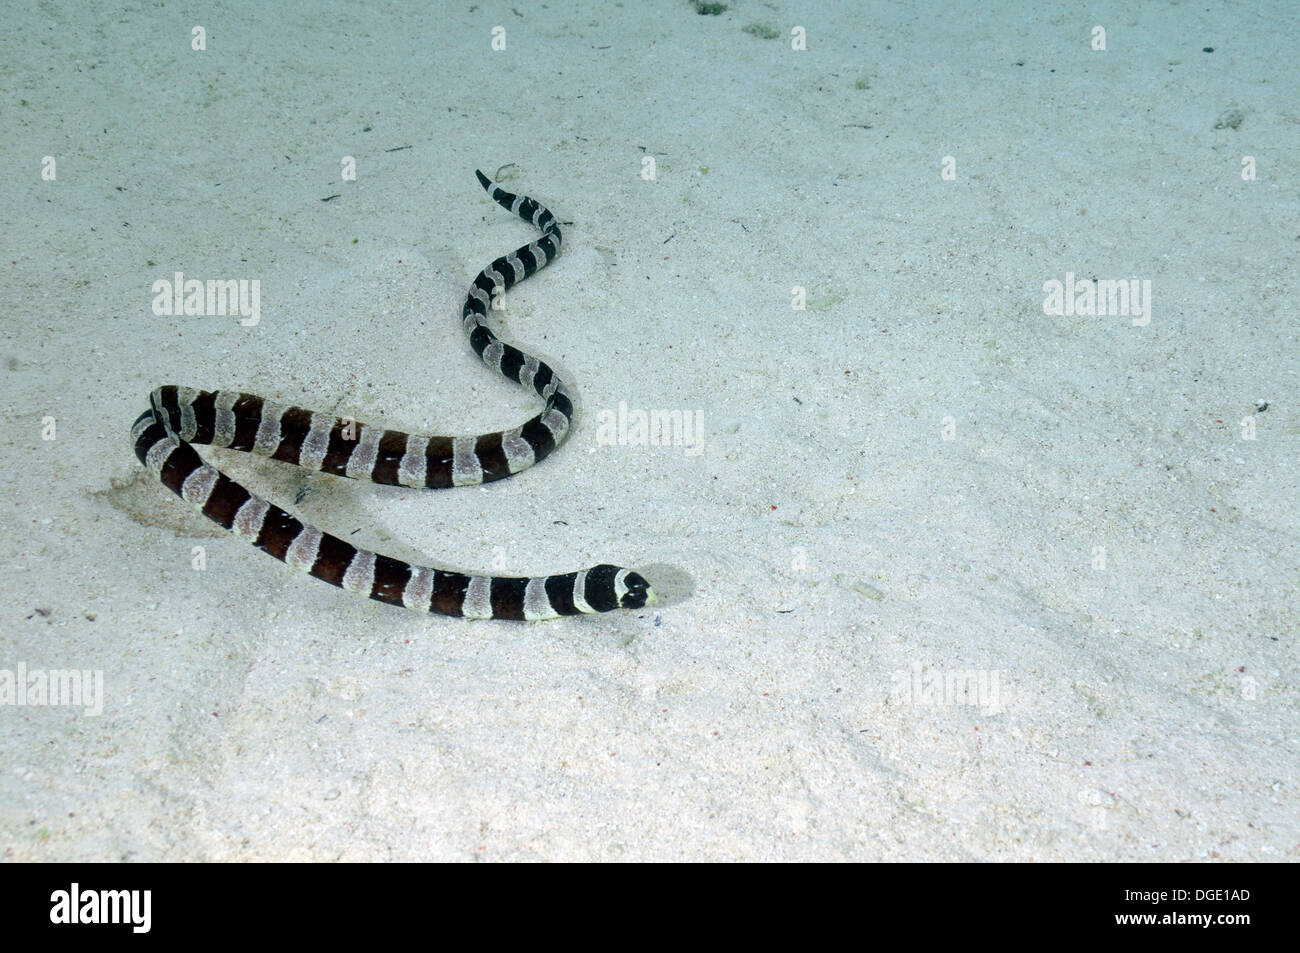 Rayas Laticauda colubrina, serpiente de mar, Piscine Naturelle, D'Oro Bay, Iles des Pins, Nueva Caledonia, Pacífico Sur Foto de stock